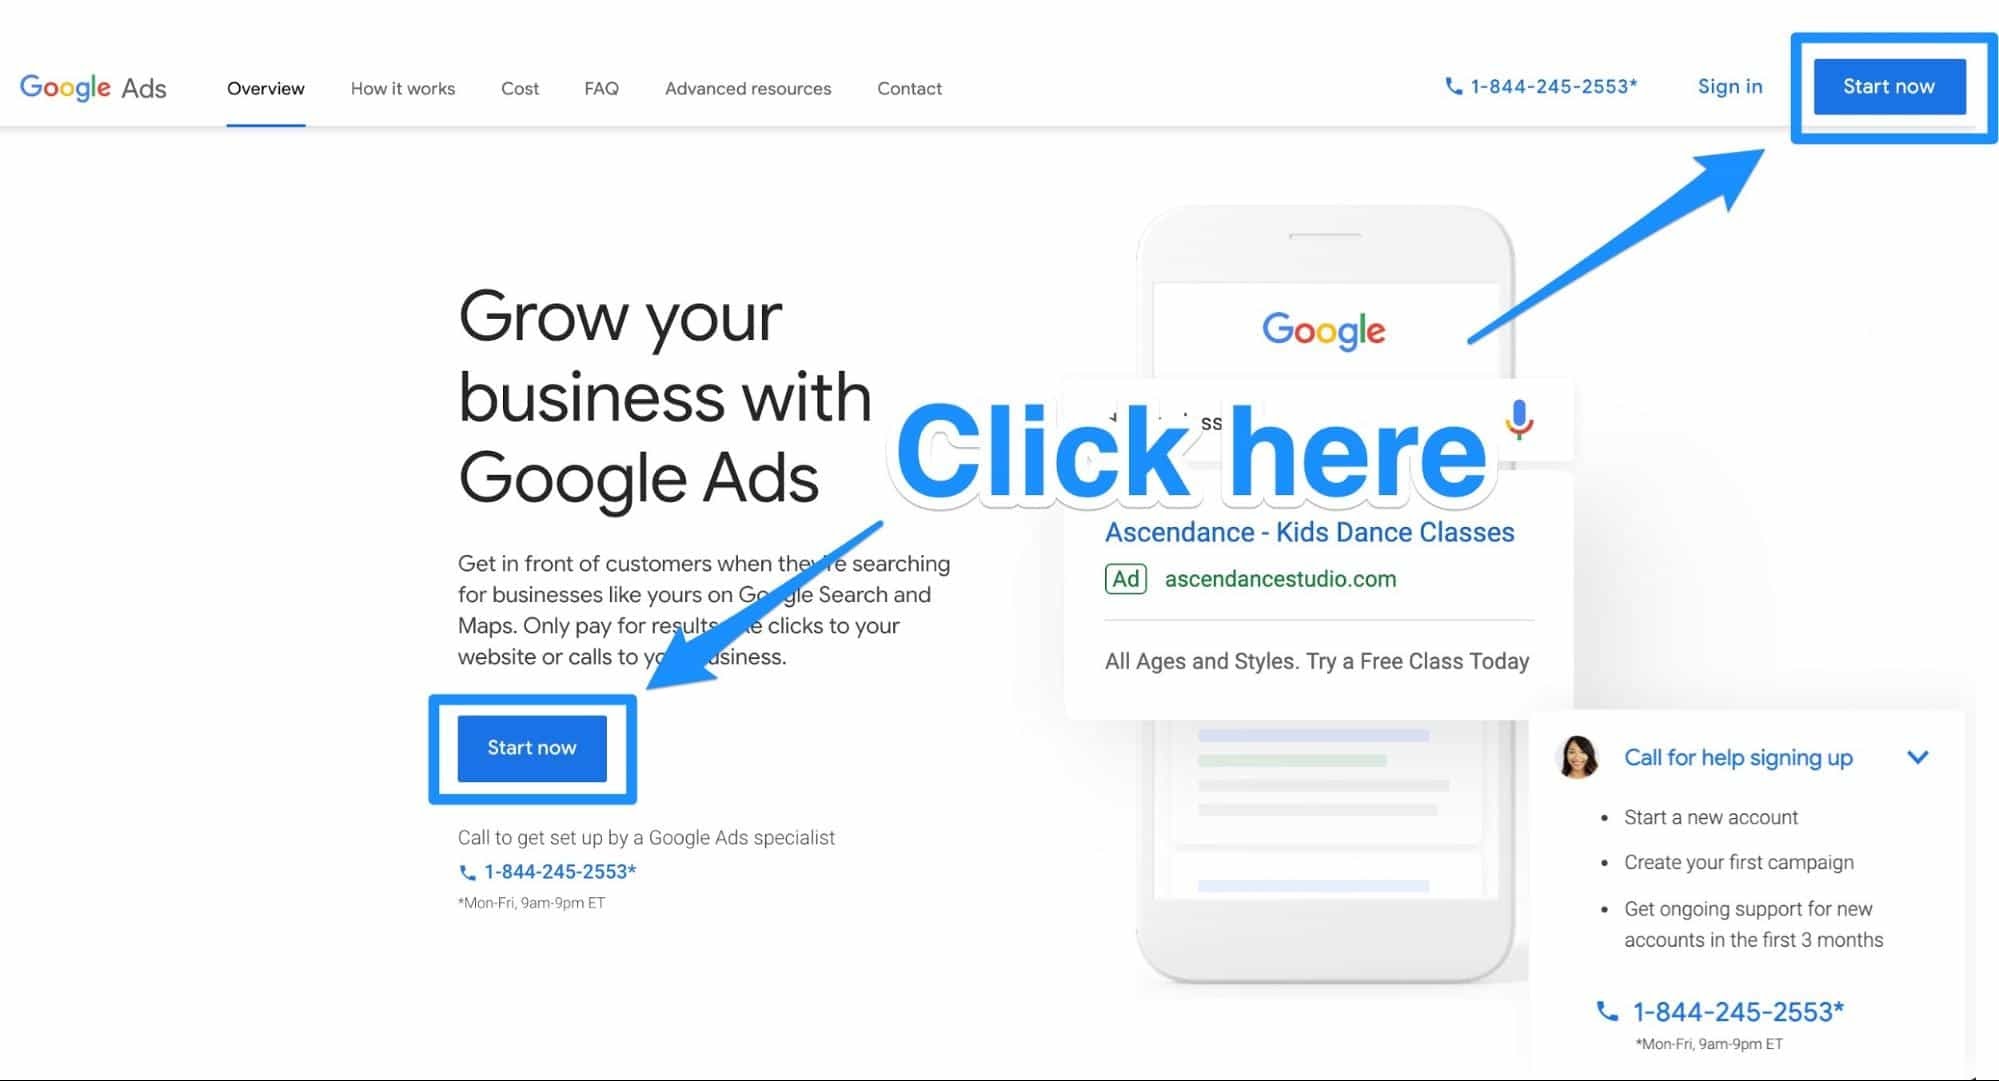 Google Ads Homepage | Google oglas u 5 koraka